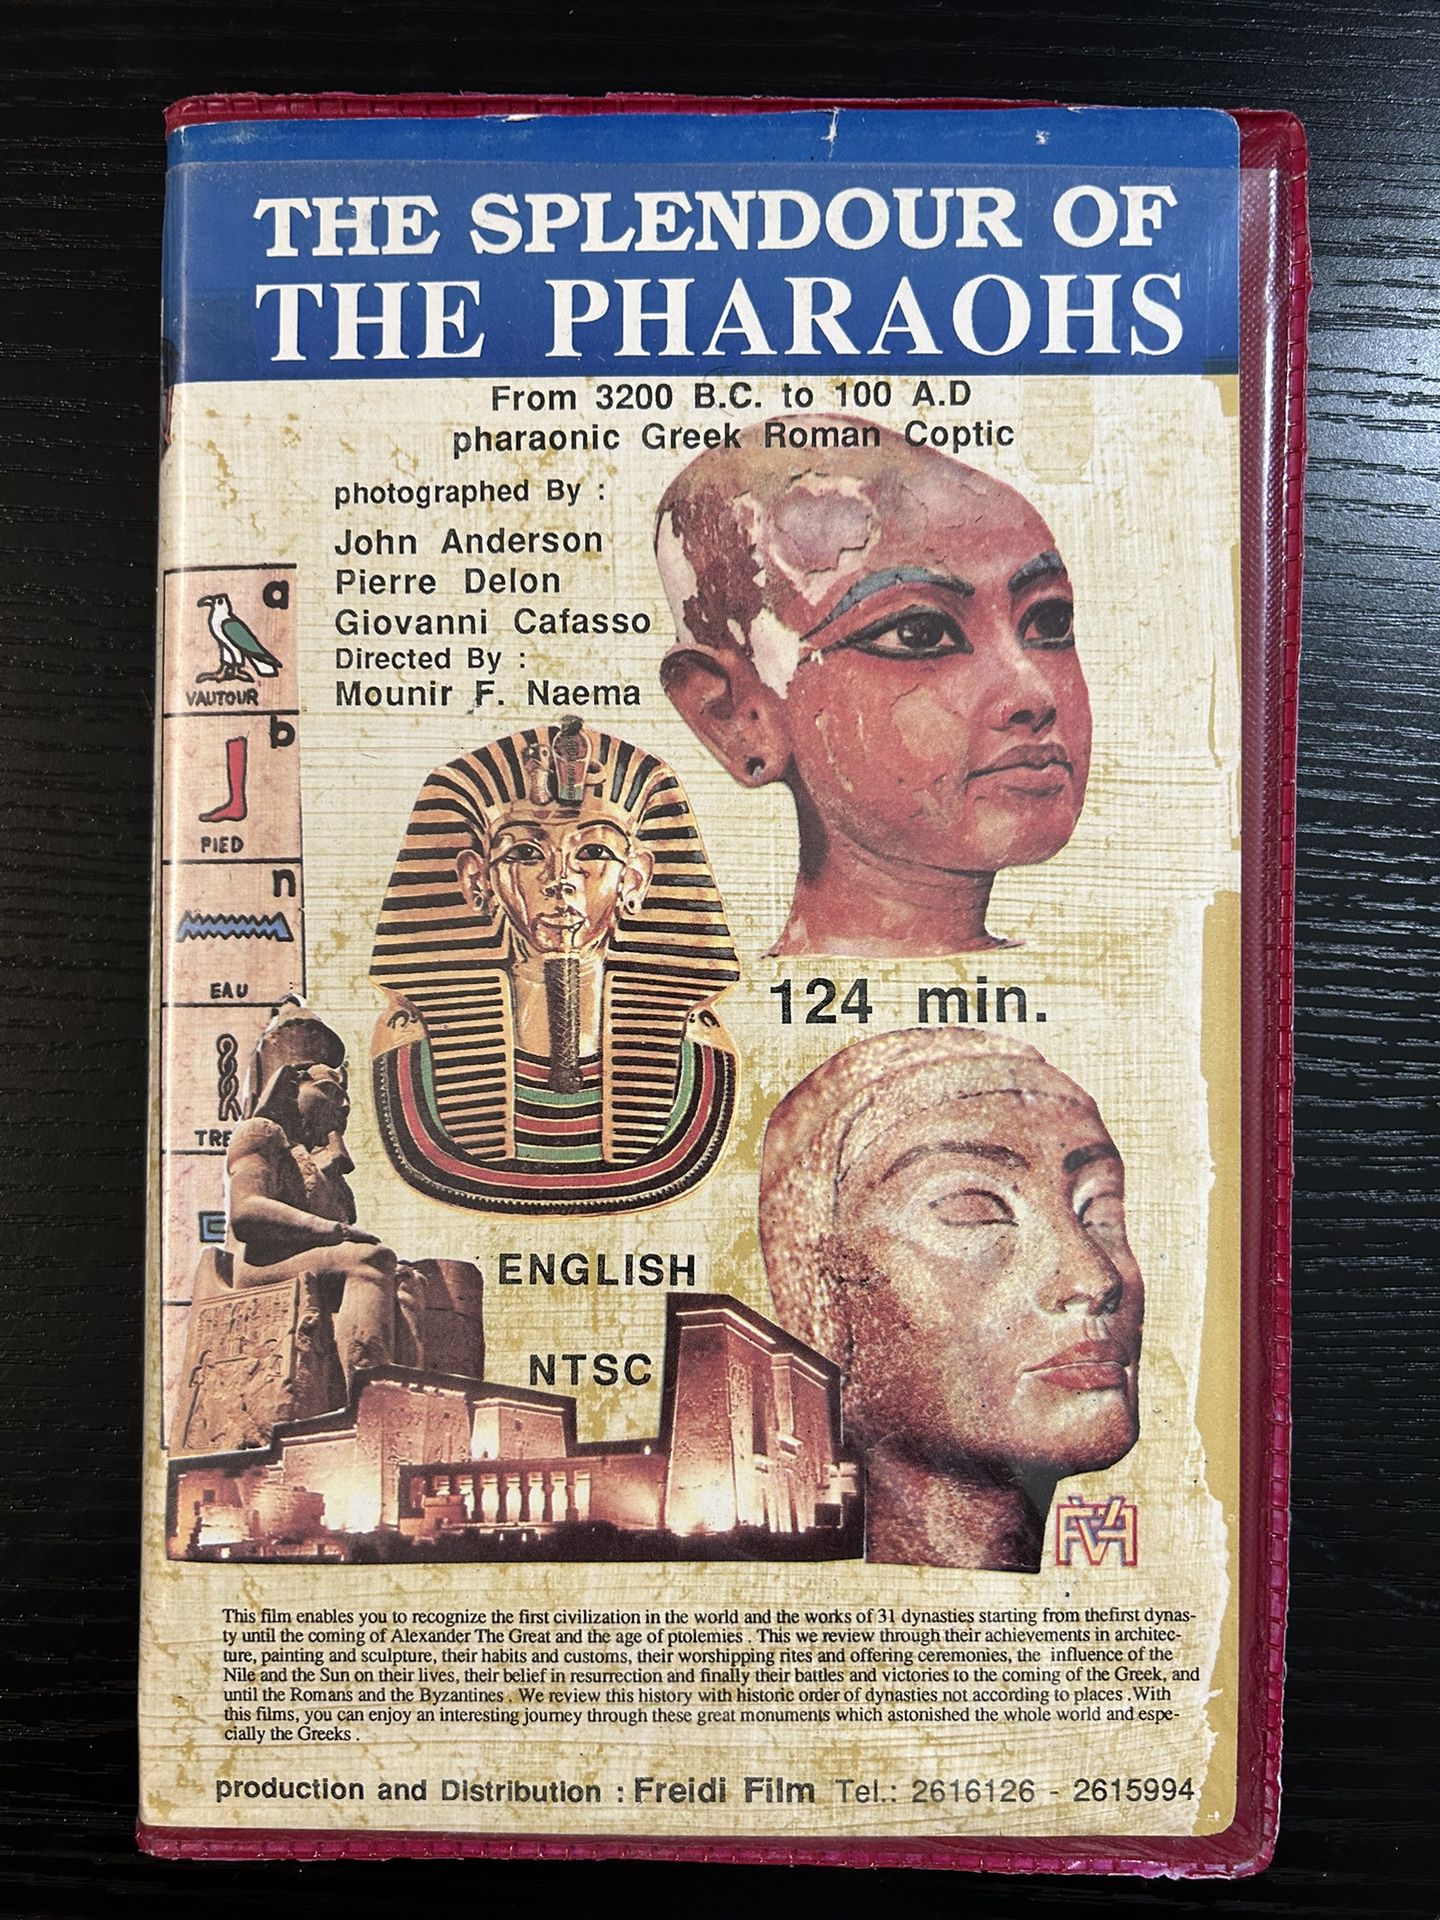 Vtg The Splendour Of The Pharaohs 3200 B.C. To 100 A.D. Pharaonic Vhs Clamshell